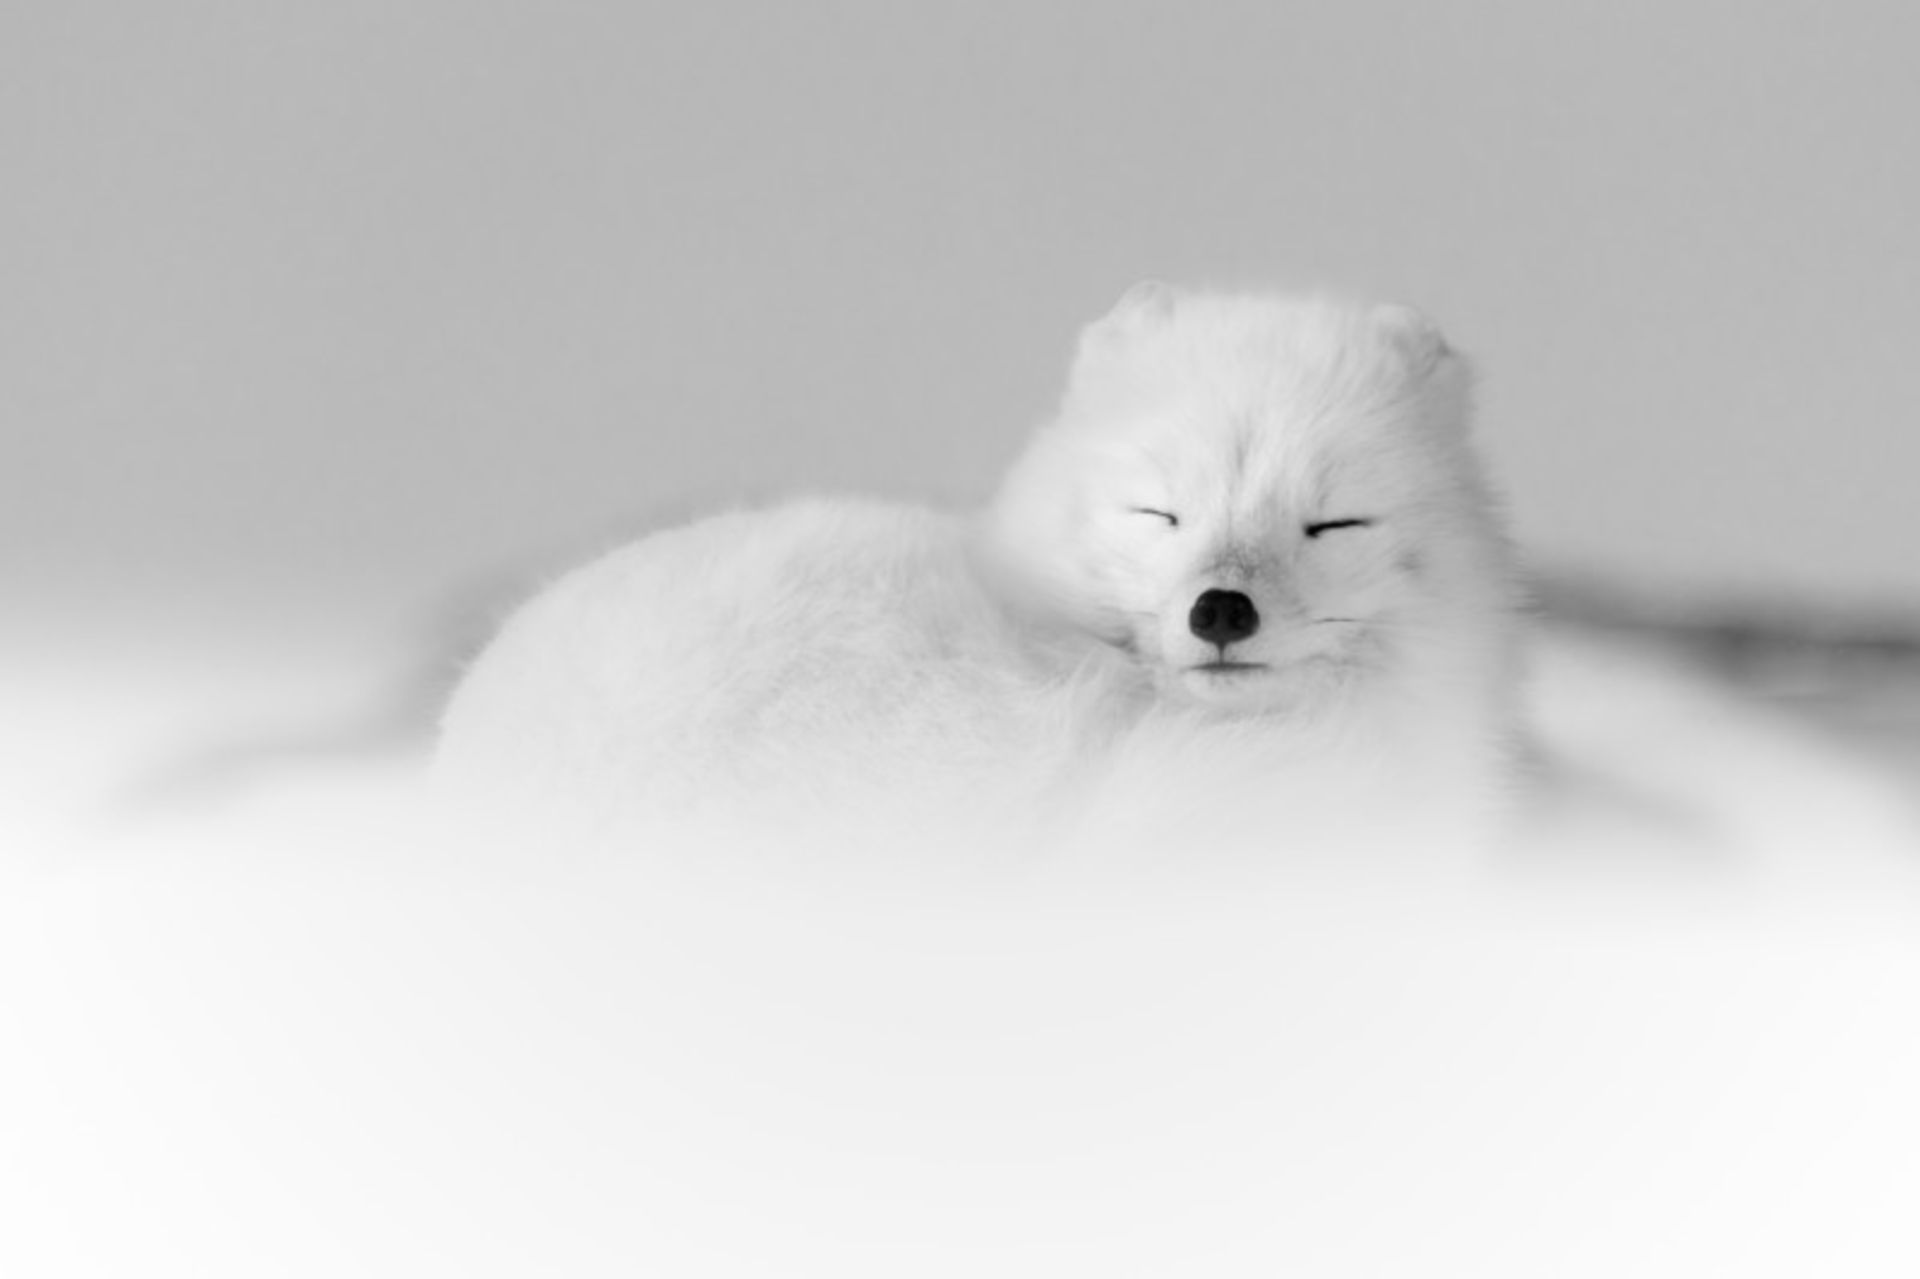  روباه قطبی در حال خواب